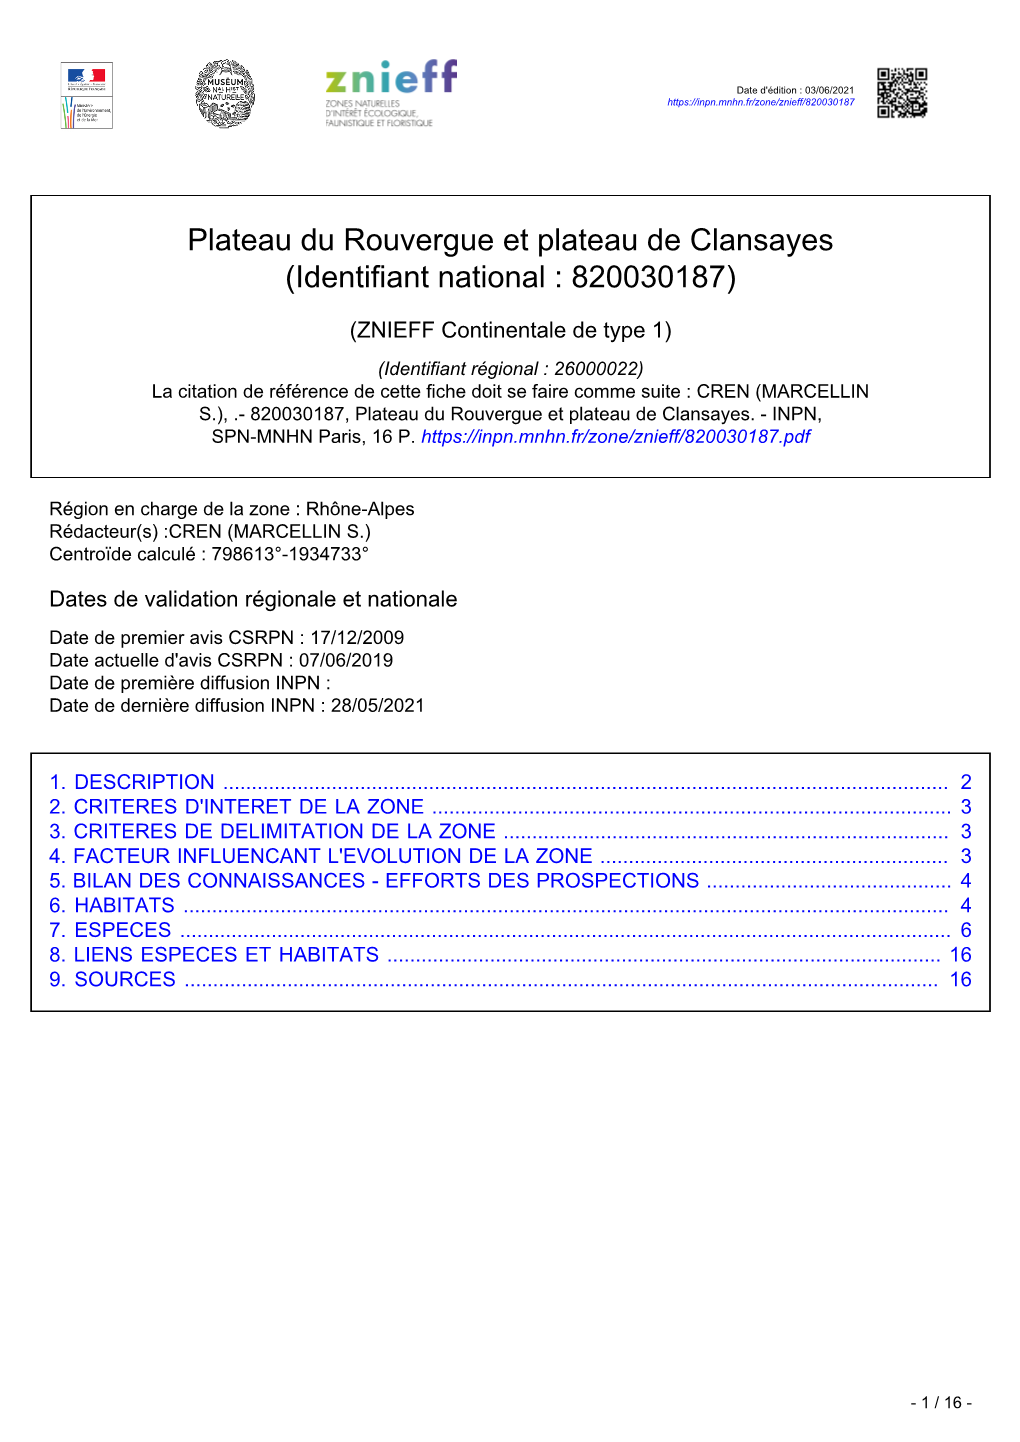 Plateau Du Rouvergue Et Plateau De Clansayes (Identifiant National : 820030187)